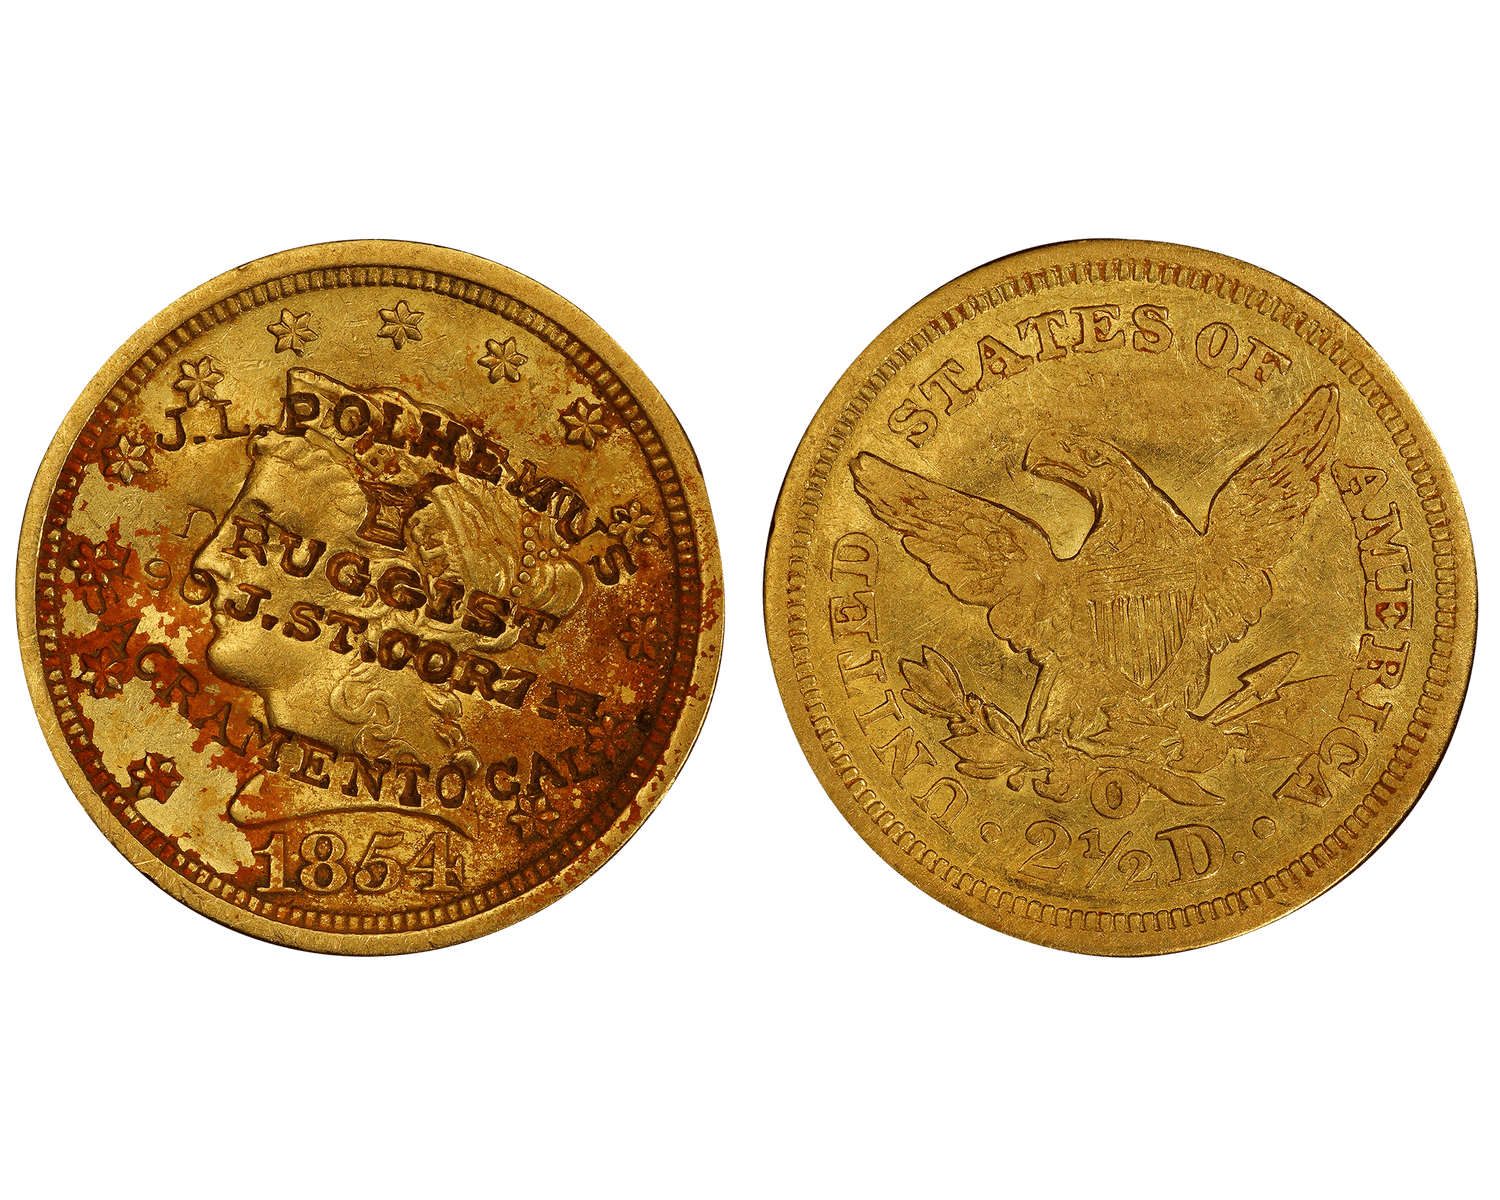 1854-O Liberty Head Quarter Eagle $2.50 Gold Coin